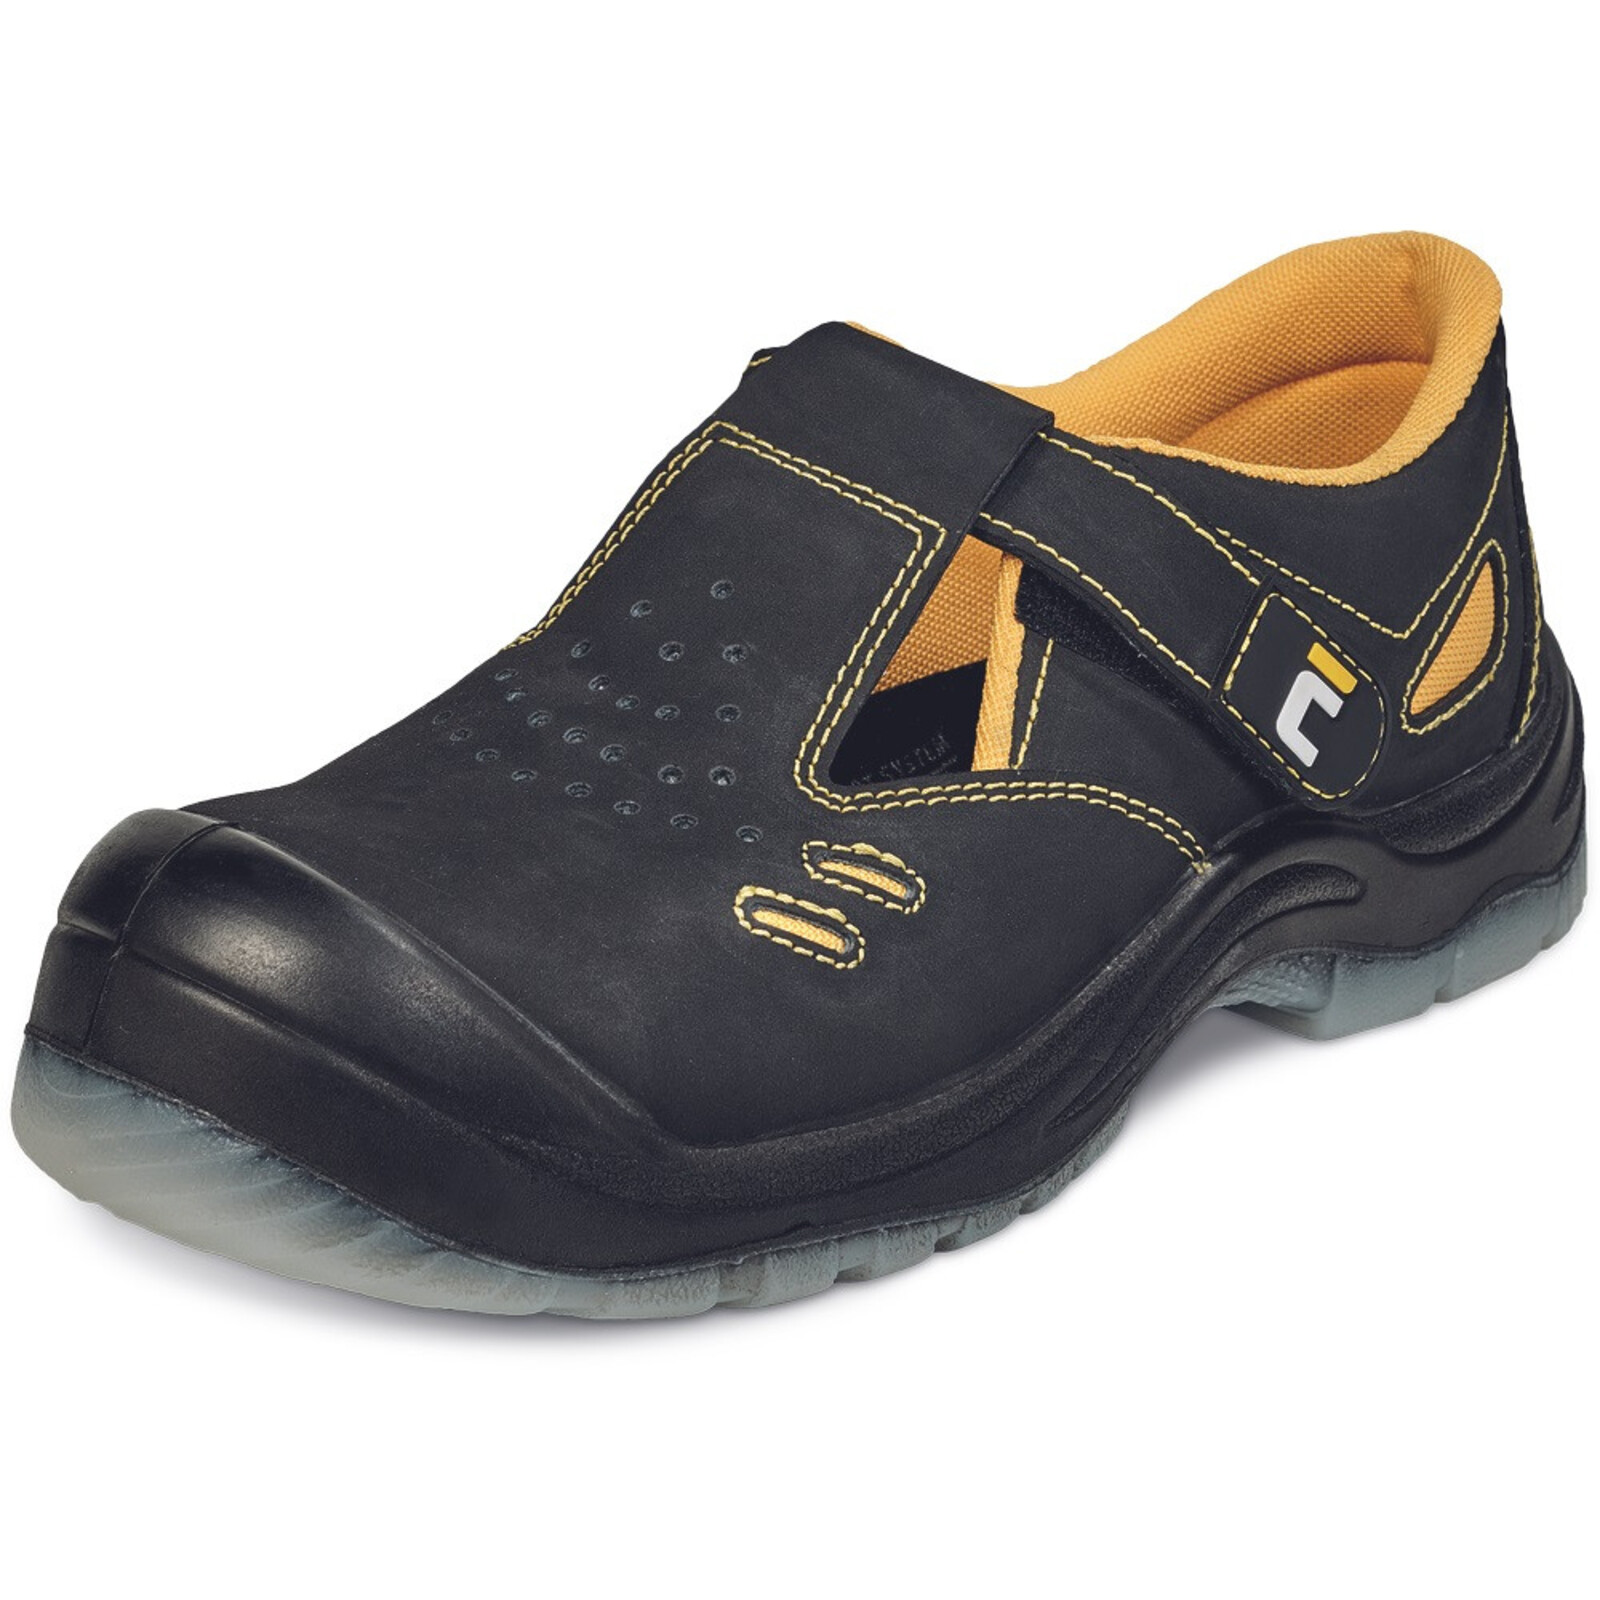 Bezpečnostné sandále Cerva BK TPU MF S1P SRC - veľkosť: 43, farba: čierna/žltá